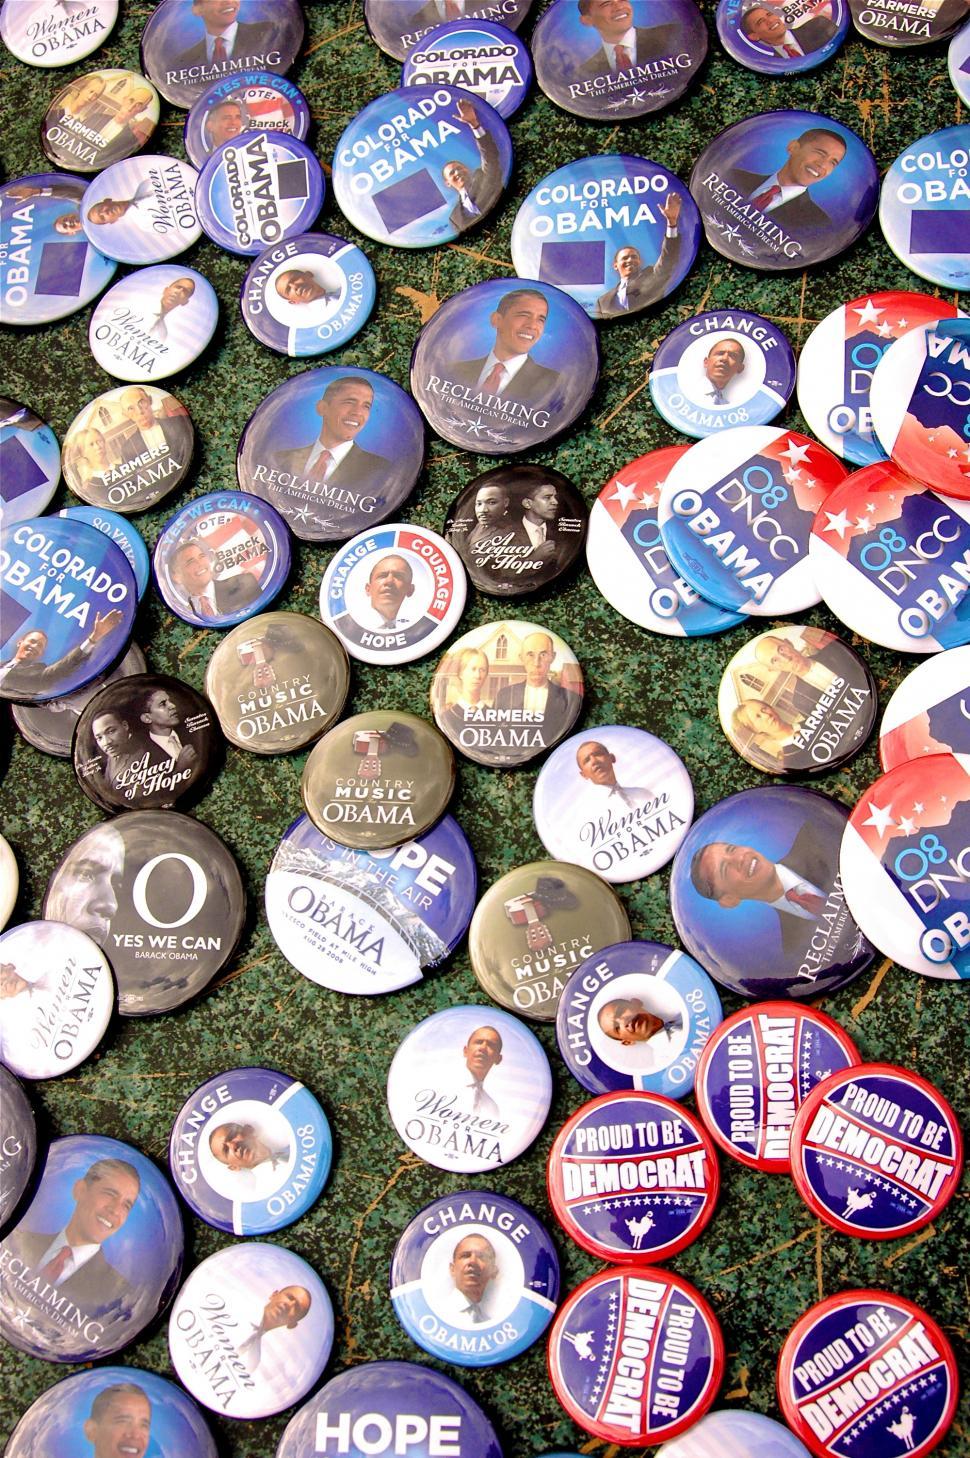 Free Image of Obama Pins 